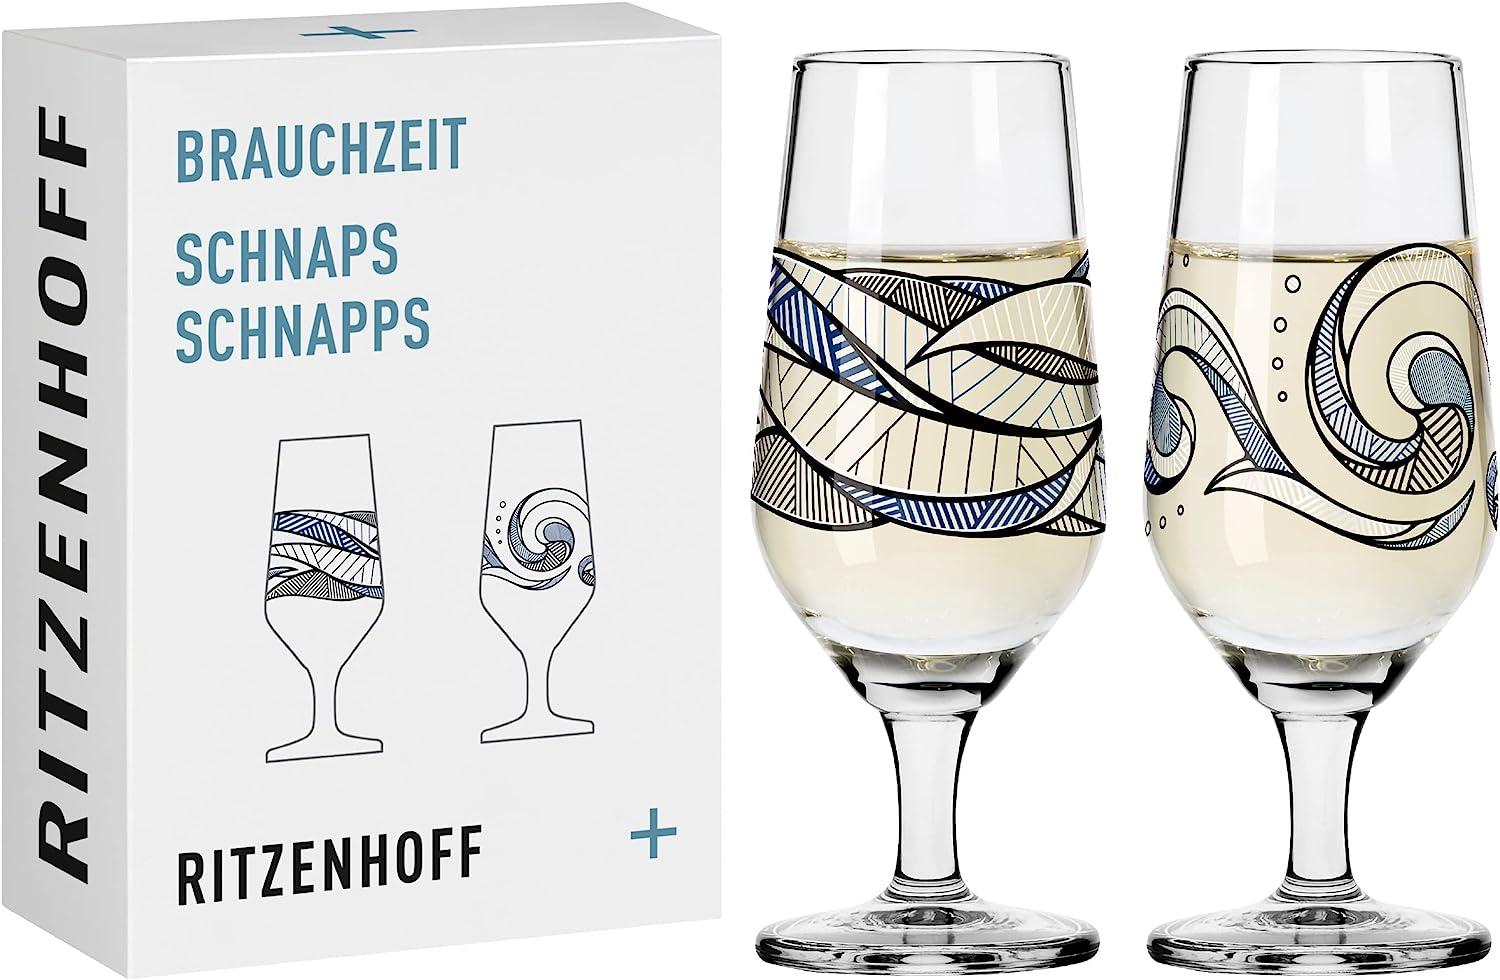 Ritzenhoff 3871003 Schnapsglas-Set #5, #6 BRAUCHZEIT Andreas Preis 2023 Bild 1